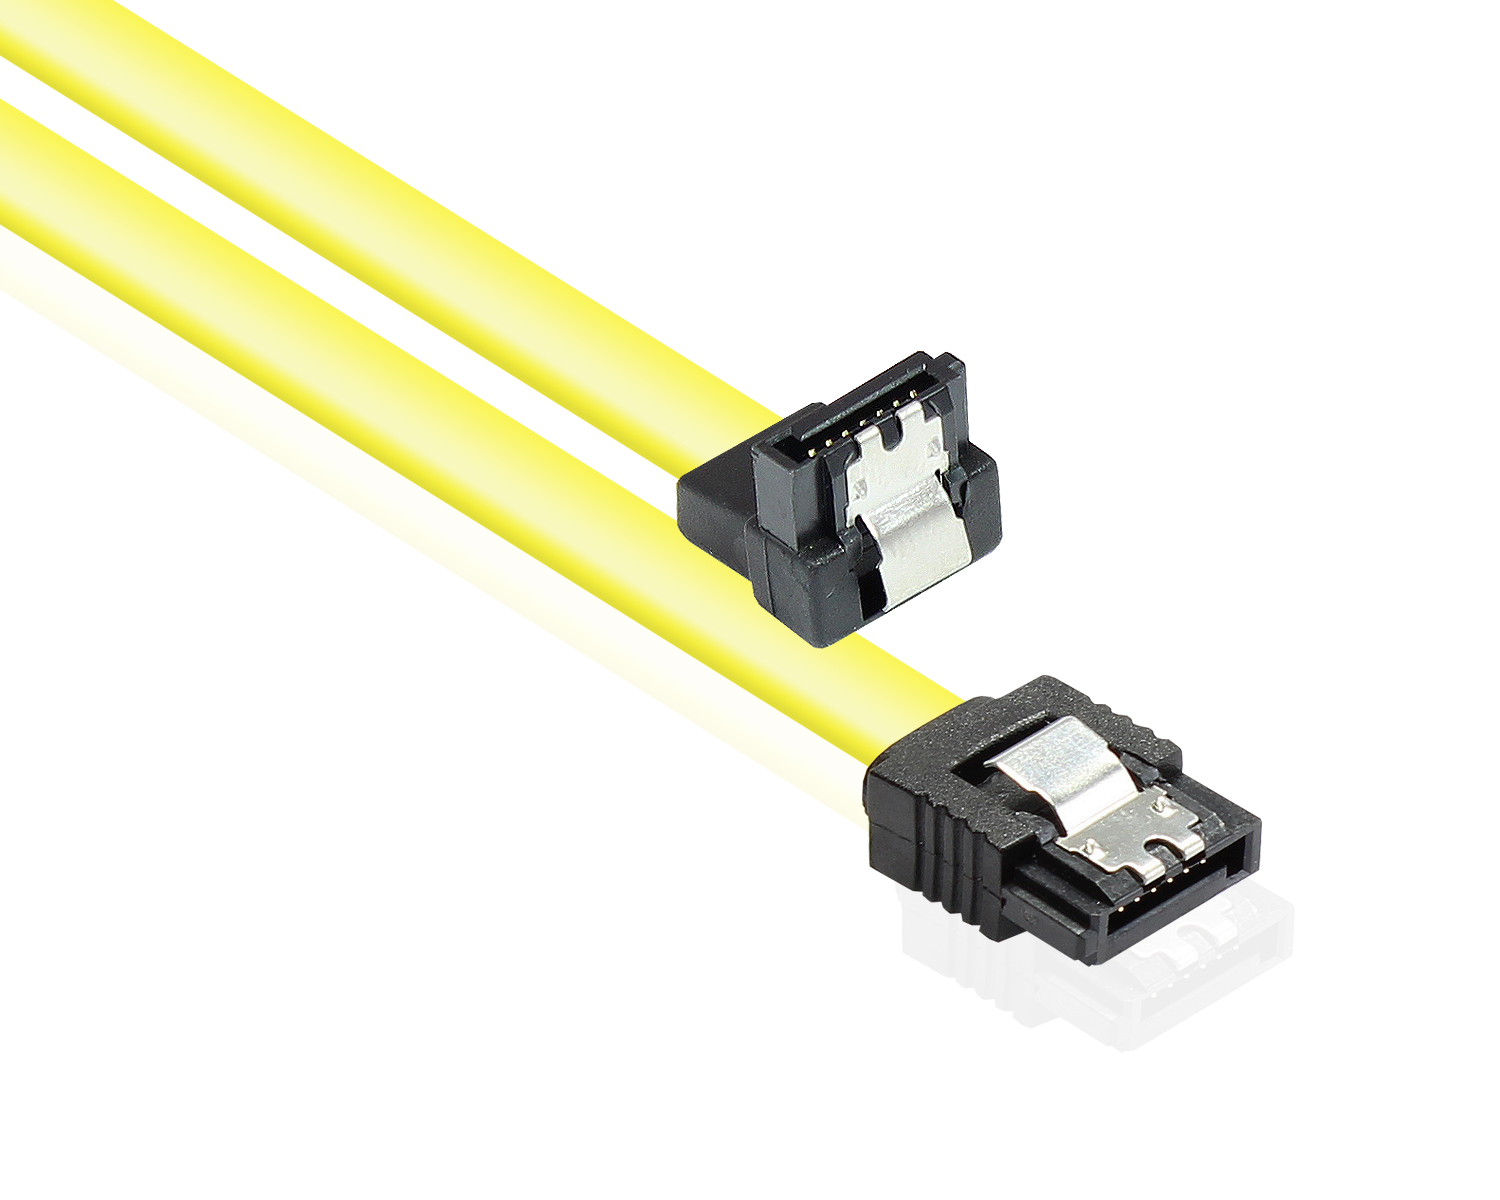 Anschlusskabel SATA 6 Gb/s mit Metallclip, einseitig gewinkelt, gelb, 0,5m, Good Connections®